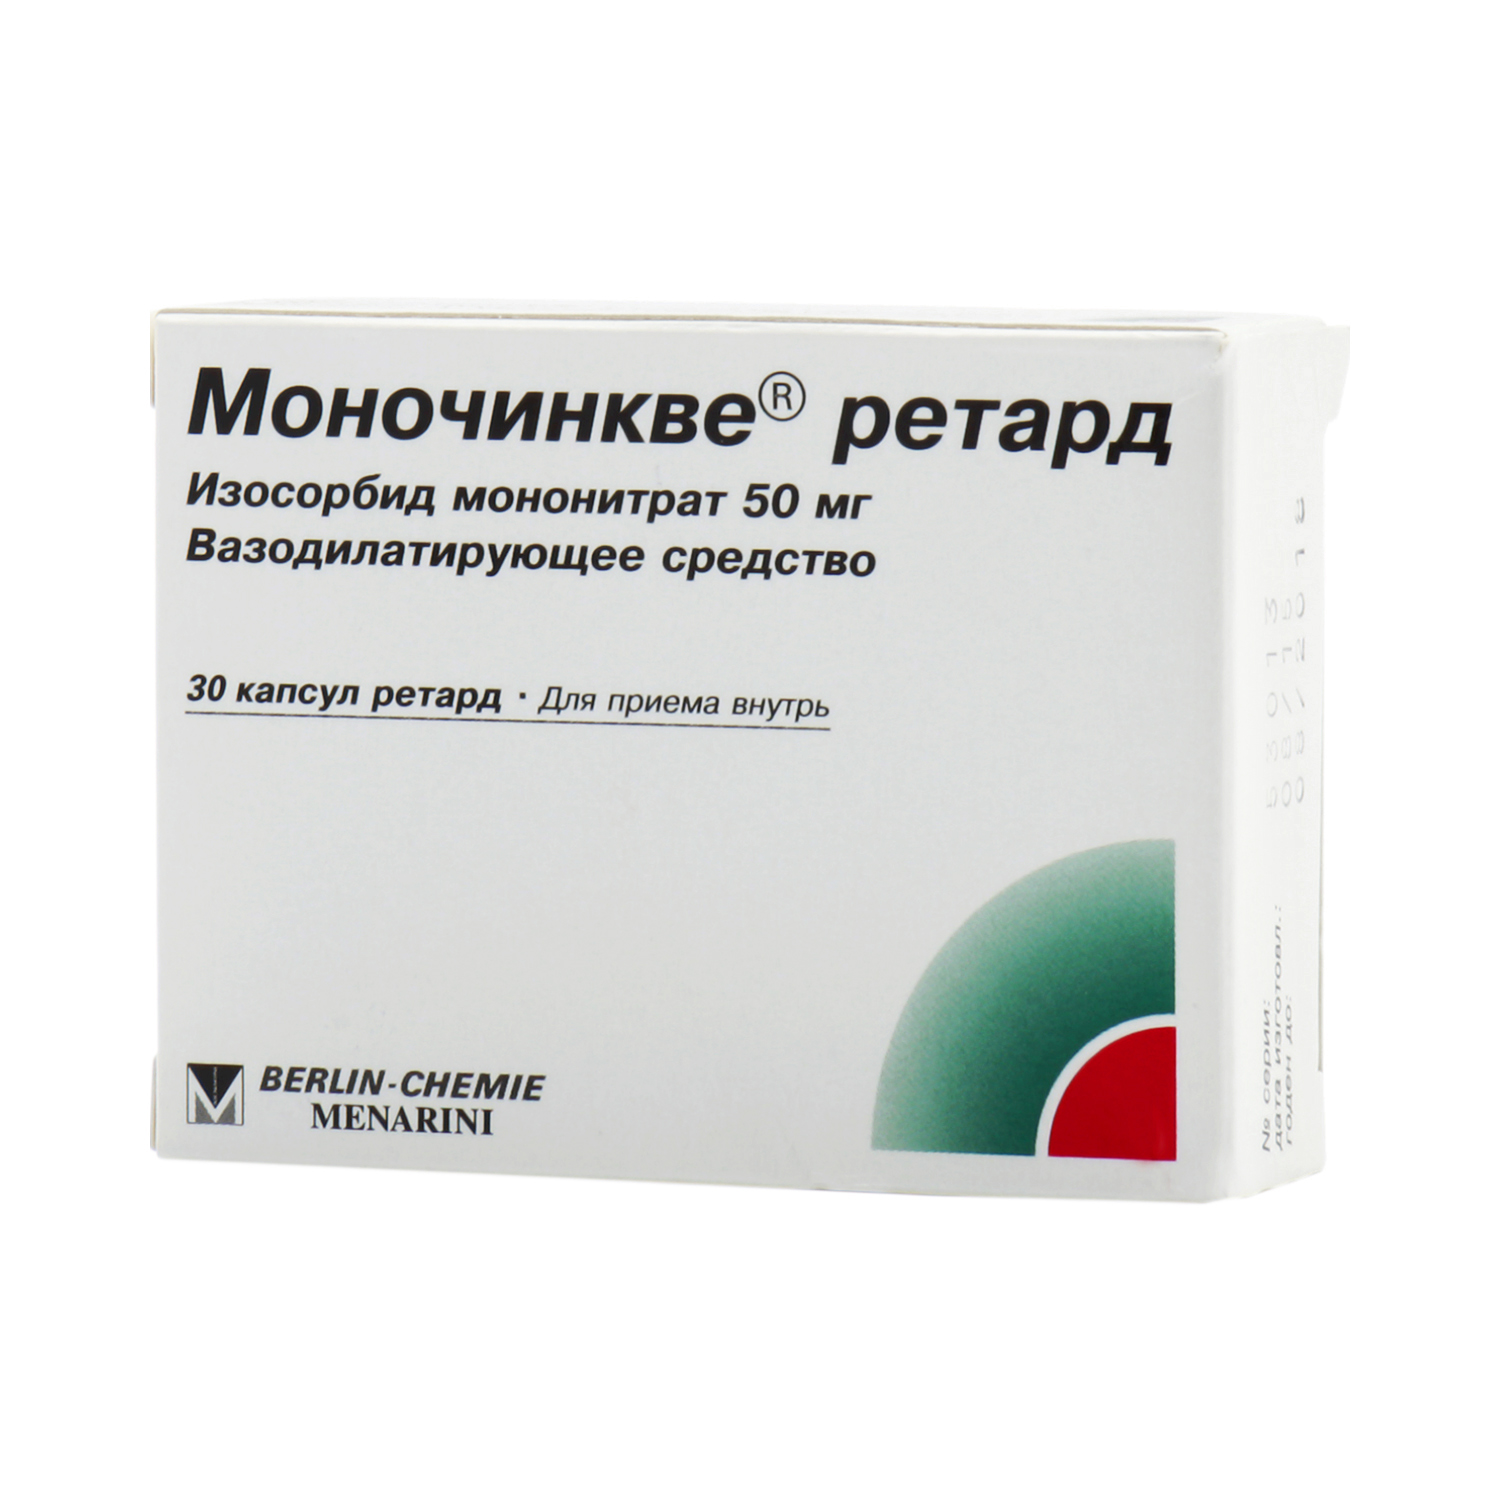 Моночинкве Ретард Капсулы 50 мг 30 шт  по цене 286,0 руб  .